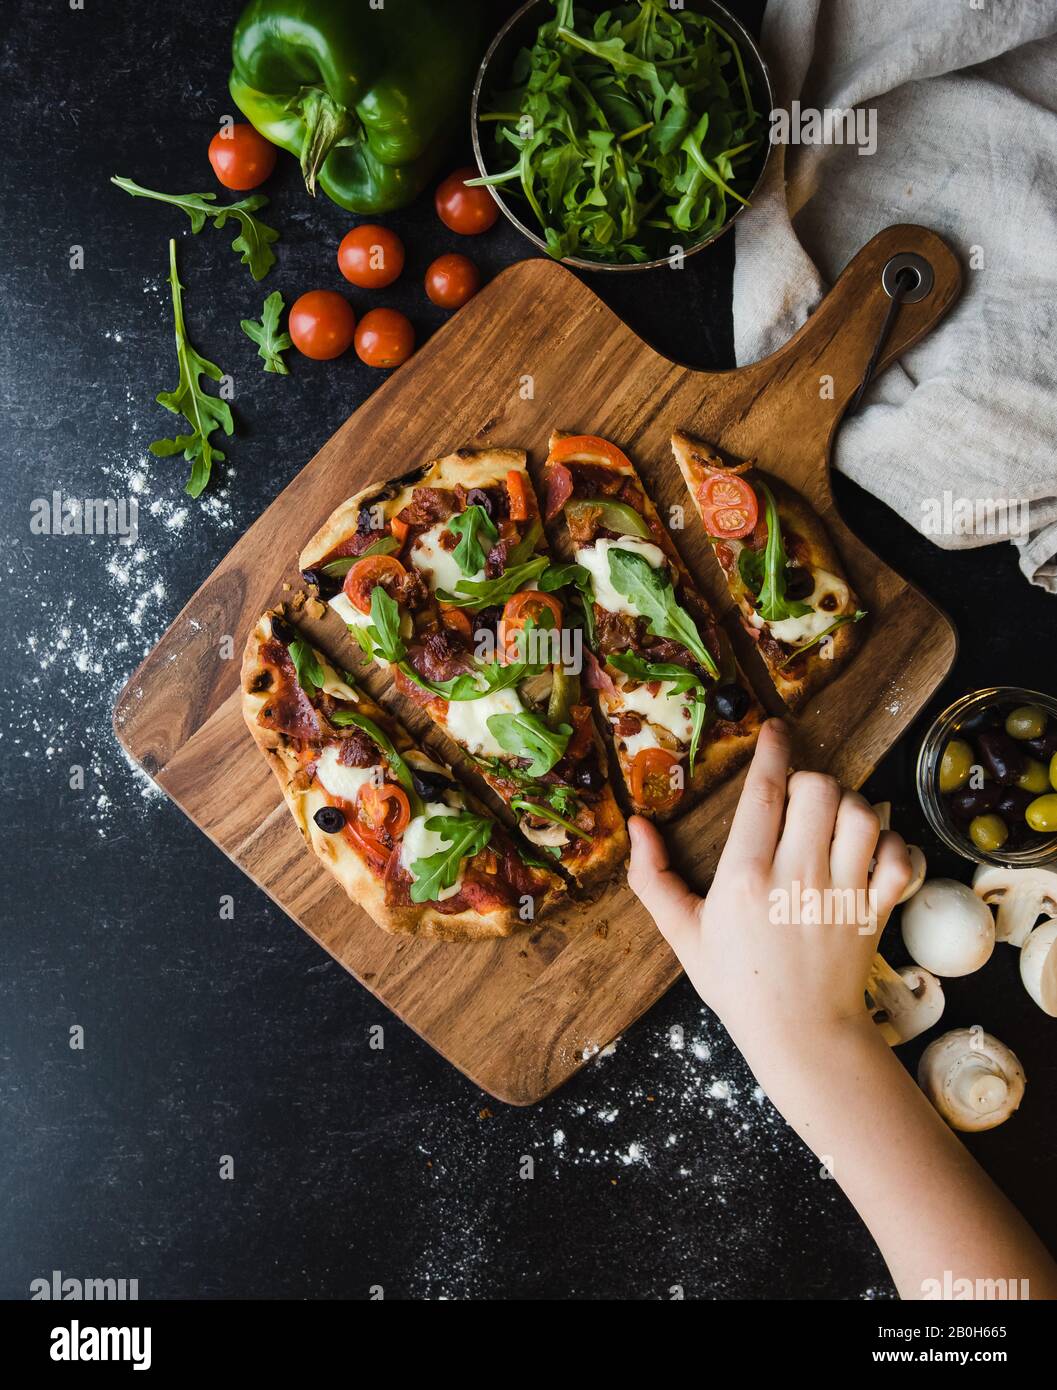 Vue de dessus de la main pour une tranche de pizza faite à la main sur un panneau de bois. Banque D'Images